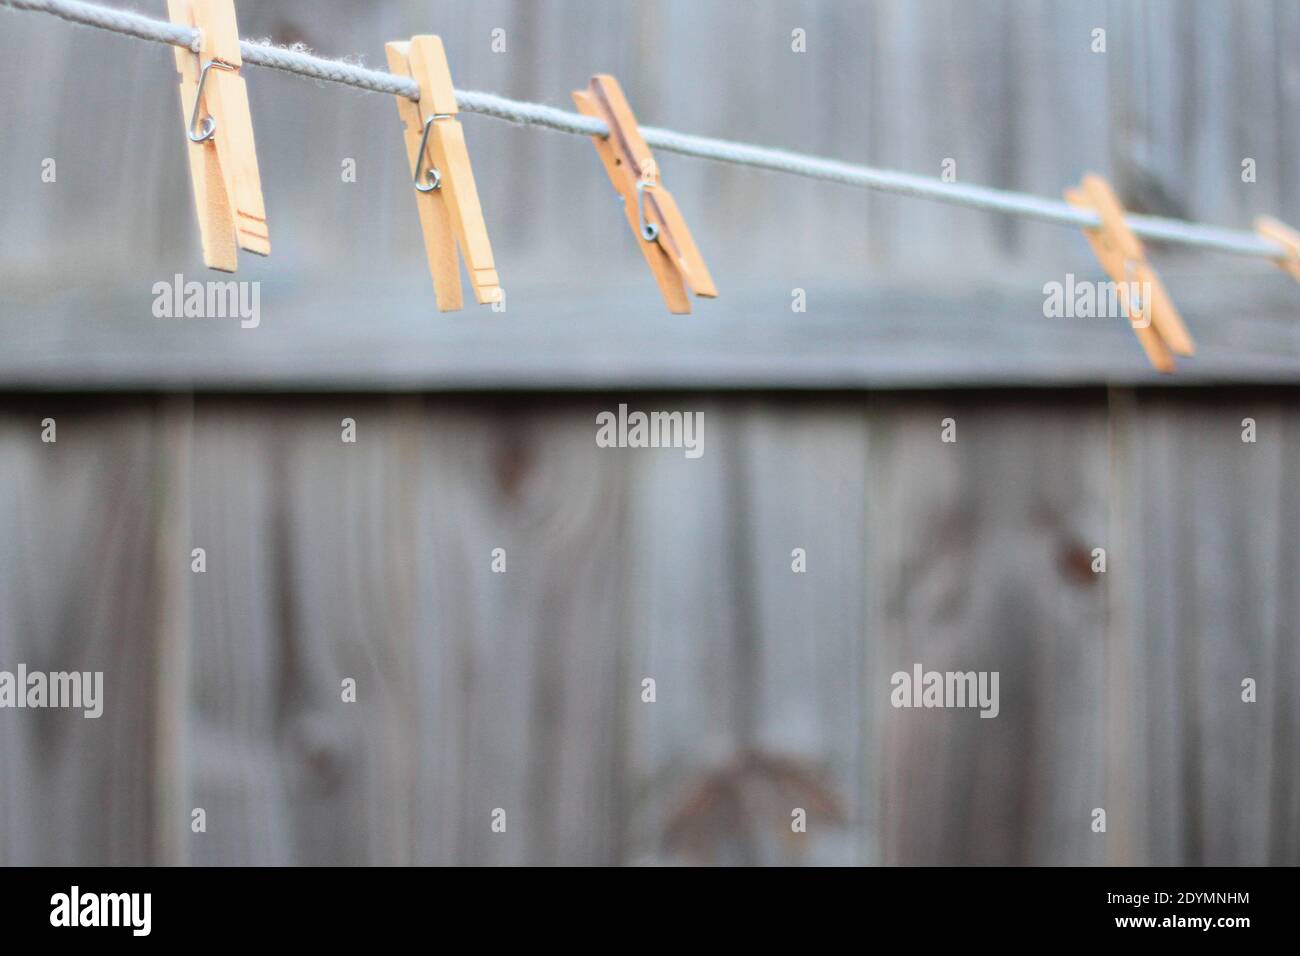 Uno stendibiancheria vuoto con stendibiancheria in legno pende in un cortile con recinzione in legno sullo sfondo. Foto Stock